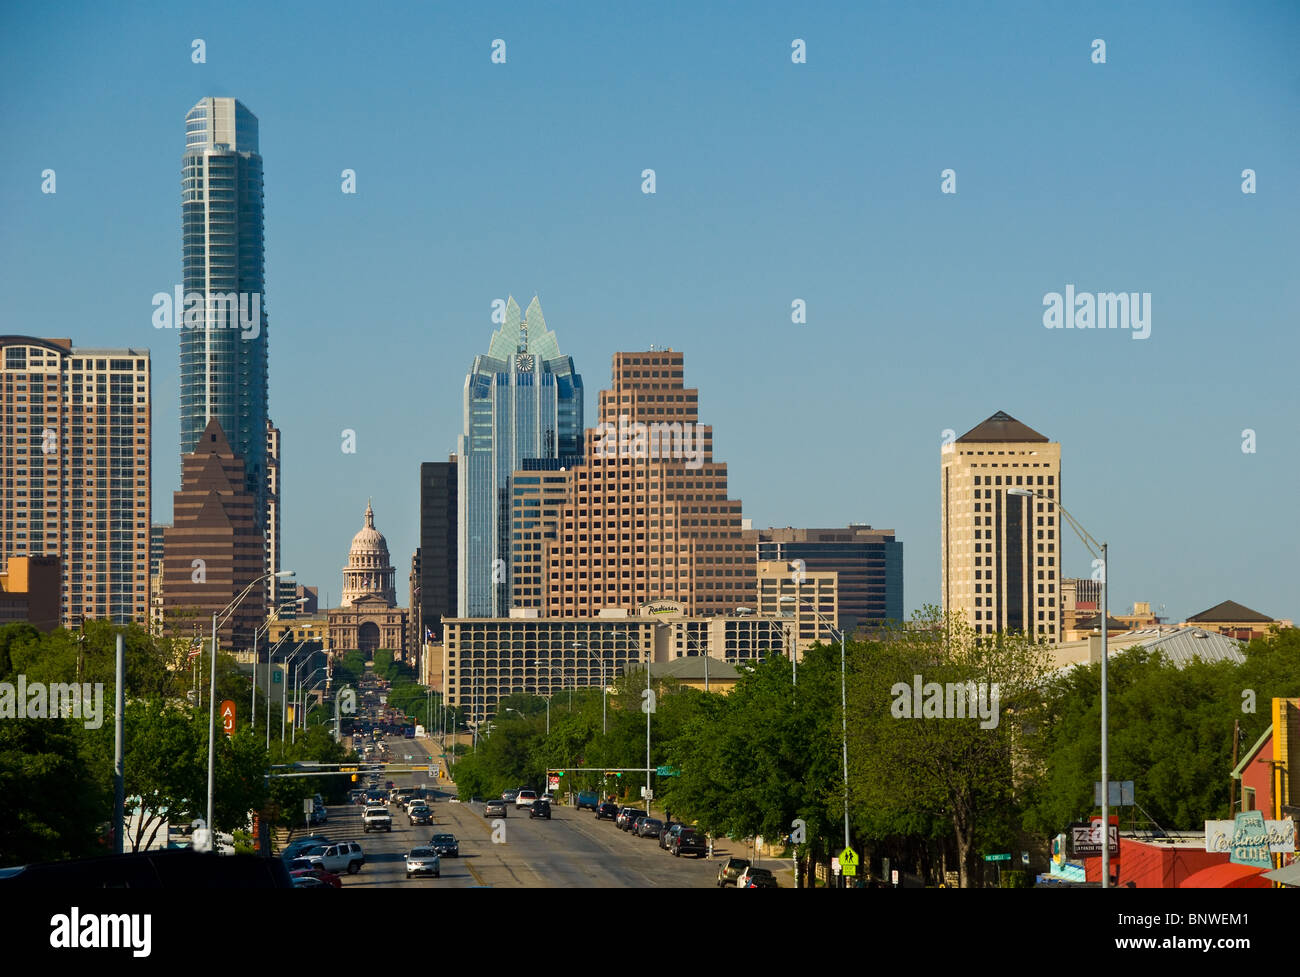 Congress Avenue führt eine Hauptverkehrsstraße Texas State Capitol in der Innenstadt von Austin, Texas, USA Stockfoto